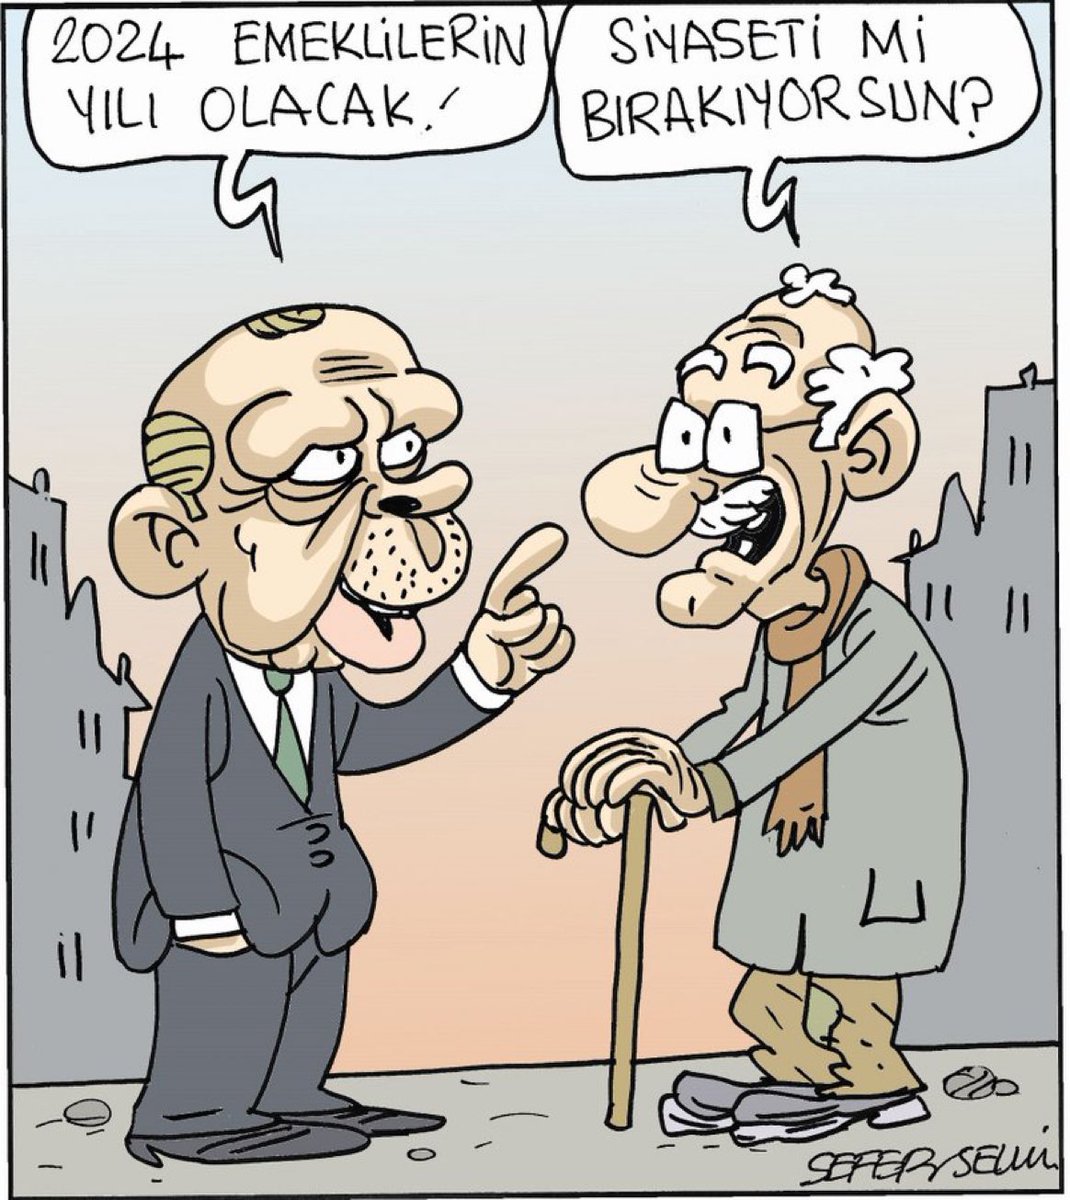 #SeferSelvi çizdi Evrensel için çizdi 

Erdoğan: '2024 emeklilerin yılı olacak.'